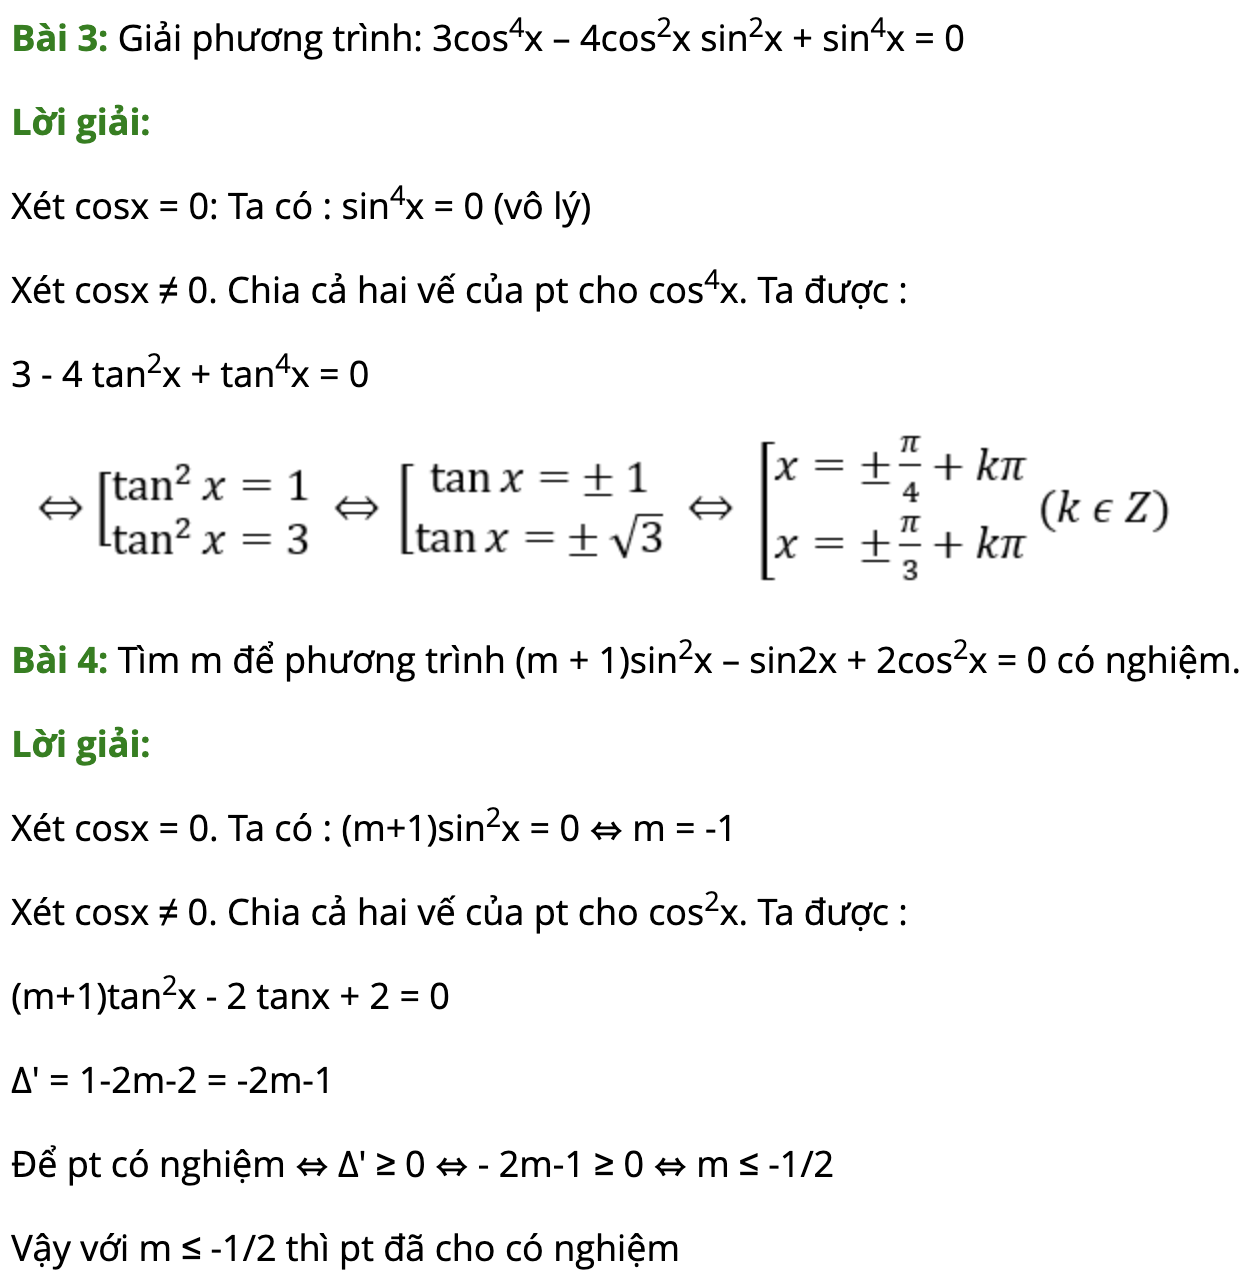 Bài tập giải phương trình đẳng cấp bậc 2, bậc 3 lượng giác có đáp án 